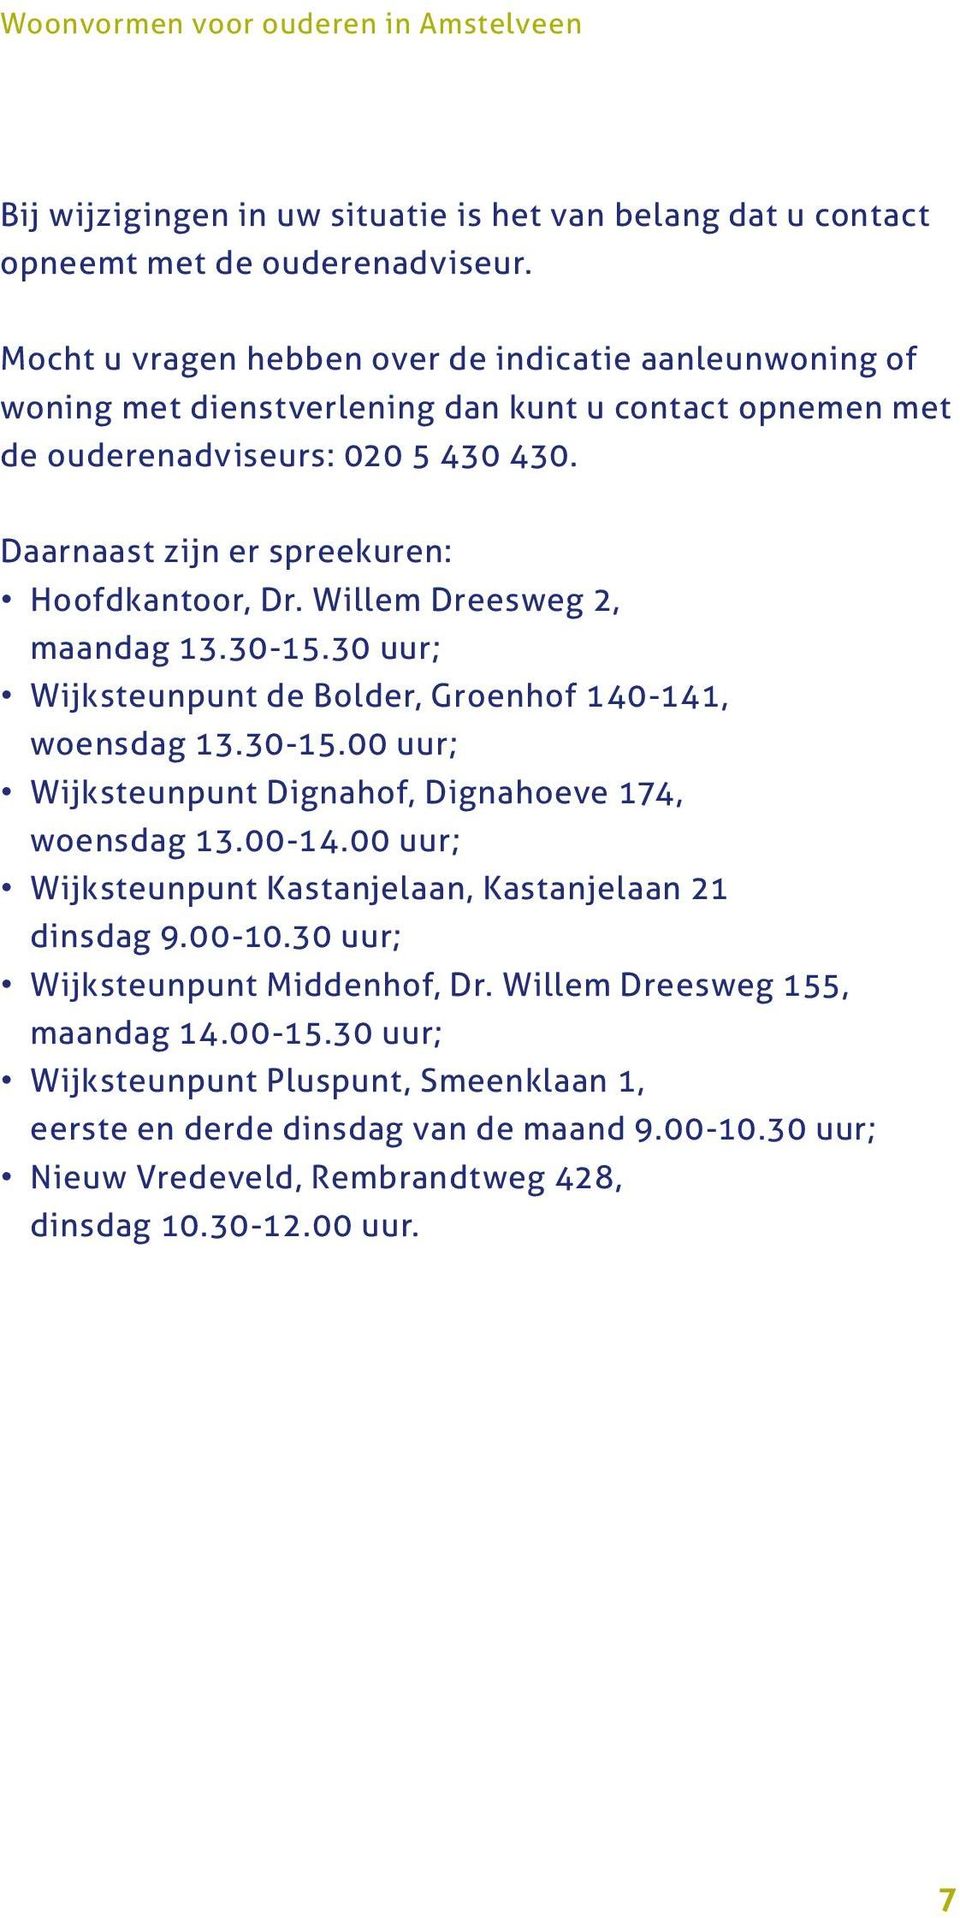 Willem Dreesweg 2, maandag 13.30-15.30 uur; Wijksteunpunt de Bolder, Groenhof 140-141, woensdag 13.30-15.00 uur; Wijksteunpunt Dignahof, Dignahoeve 174, woensdag 13.00-14.